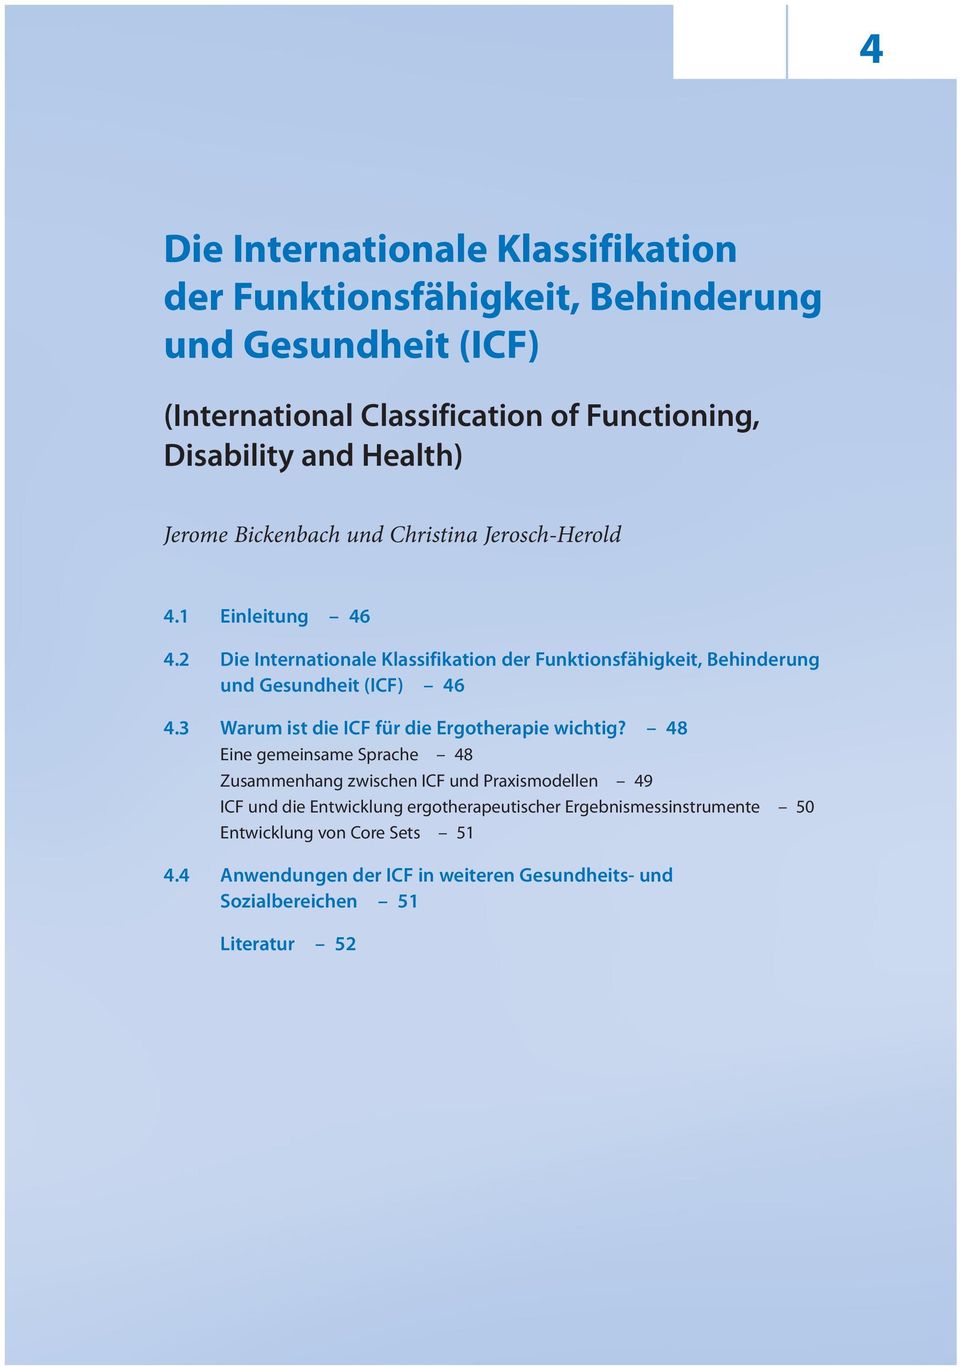 2 Die Internationale Klassifikation der Funktions fähigkeit, Behinderung und Gesundheit (ICF) 6.3 Warum ist die ICF für die Ergotherapie wichtig?